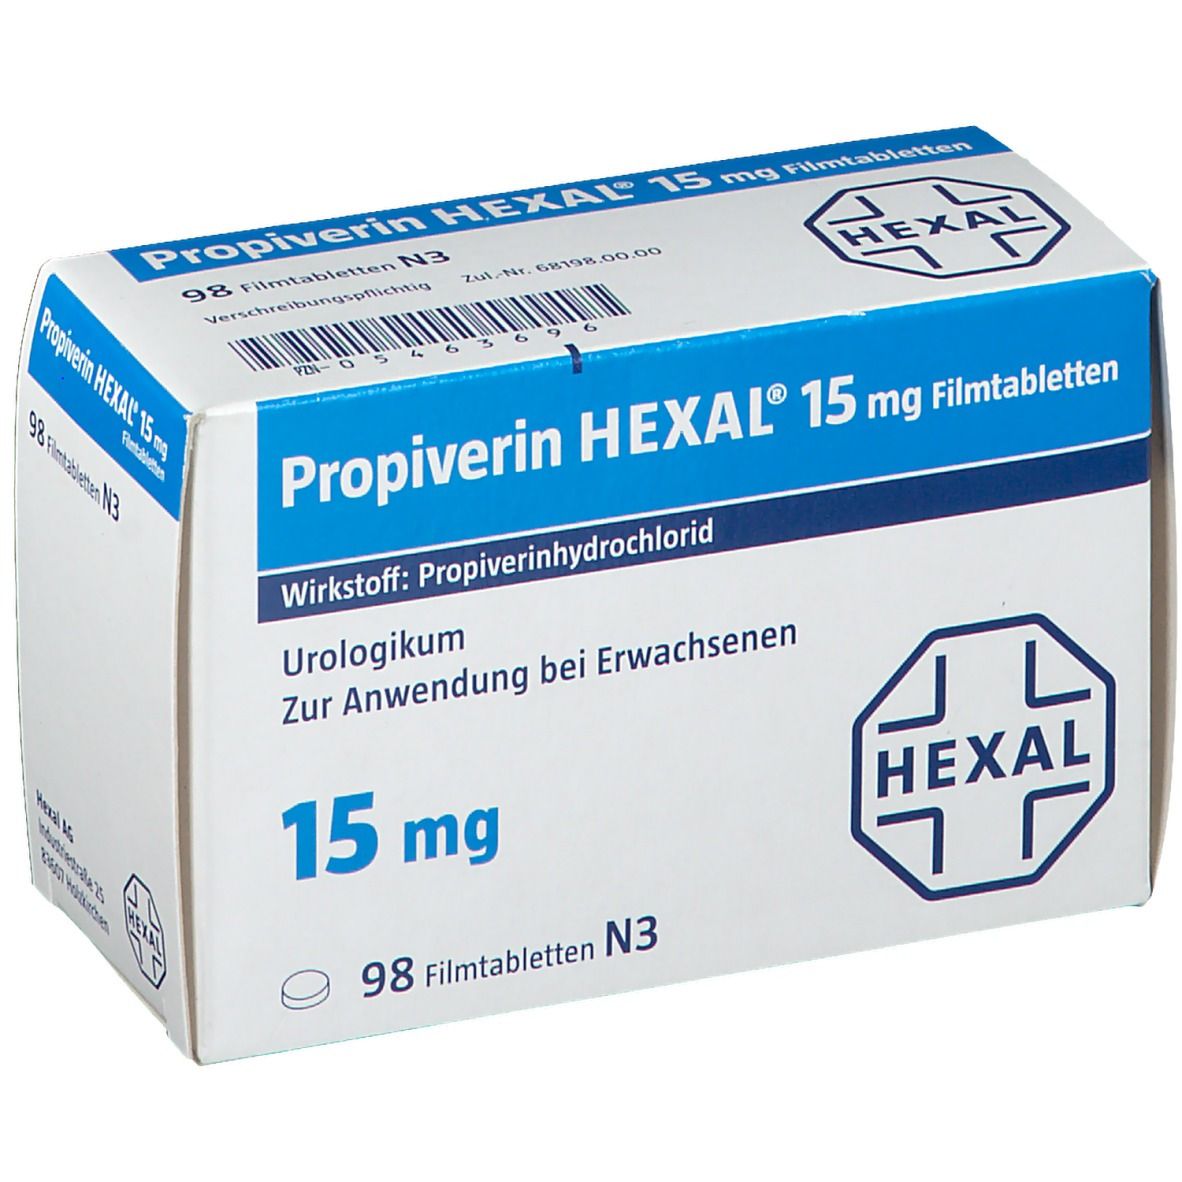 Propiverin HEXAL® 15 mg